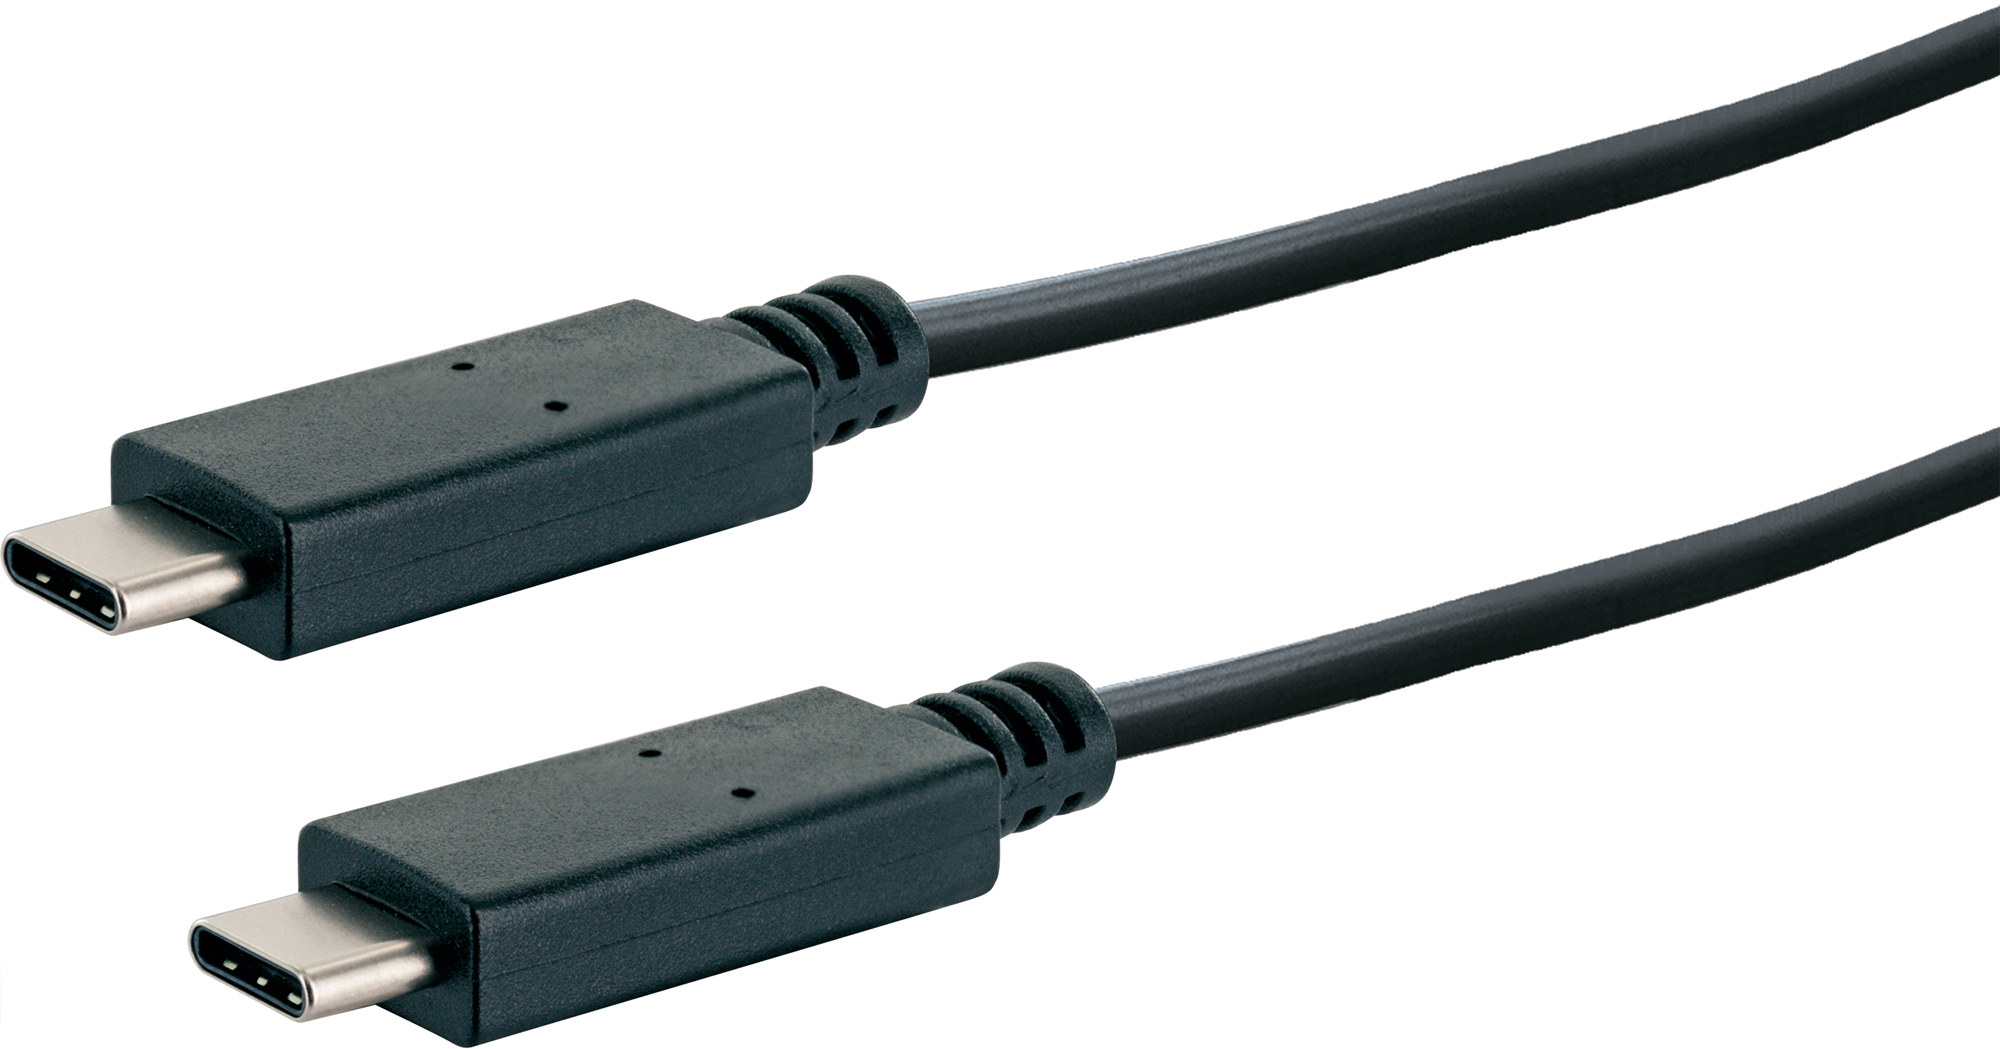 & C) -LK101C 3.1 SCHWAIGER m, zu Ladekabel C 3.1 531-, Schwarz Sync 1 C) (Type USB Stecker Stecker, (Type USB Type